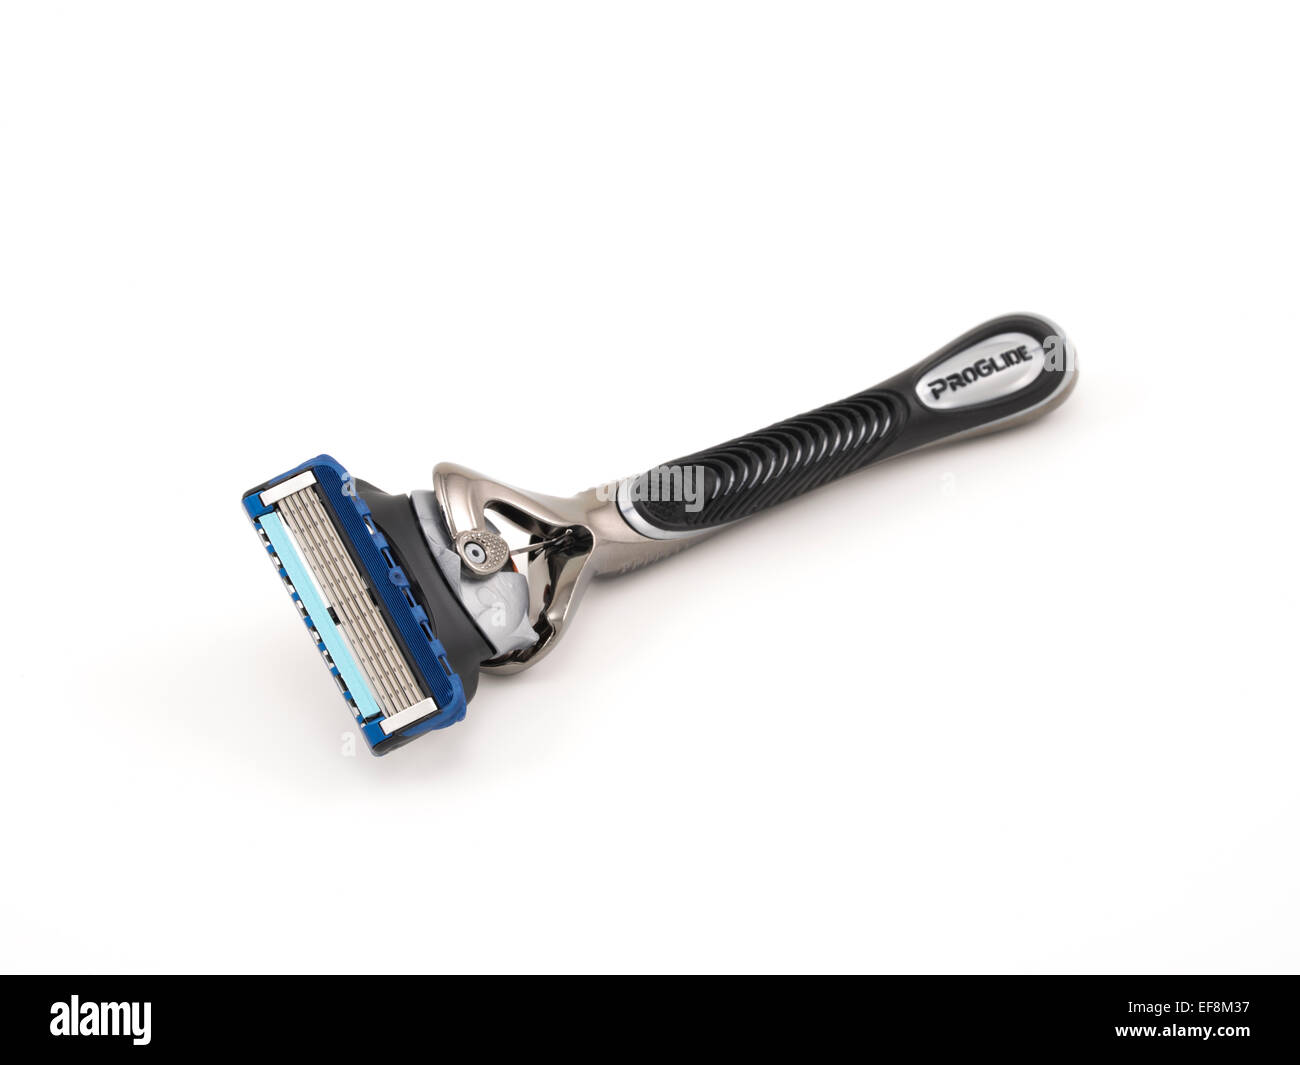 Gillette Fusion Proglide máquina de afeitar desechable con Flexball para afeitar / Grooming Masculino Foto de stock